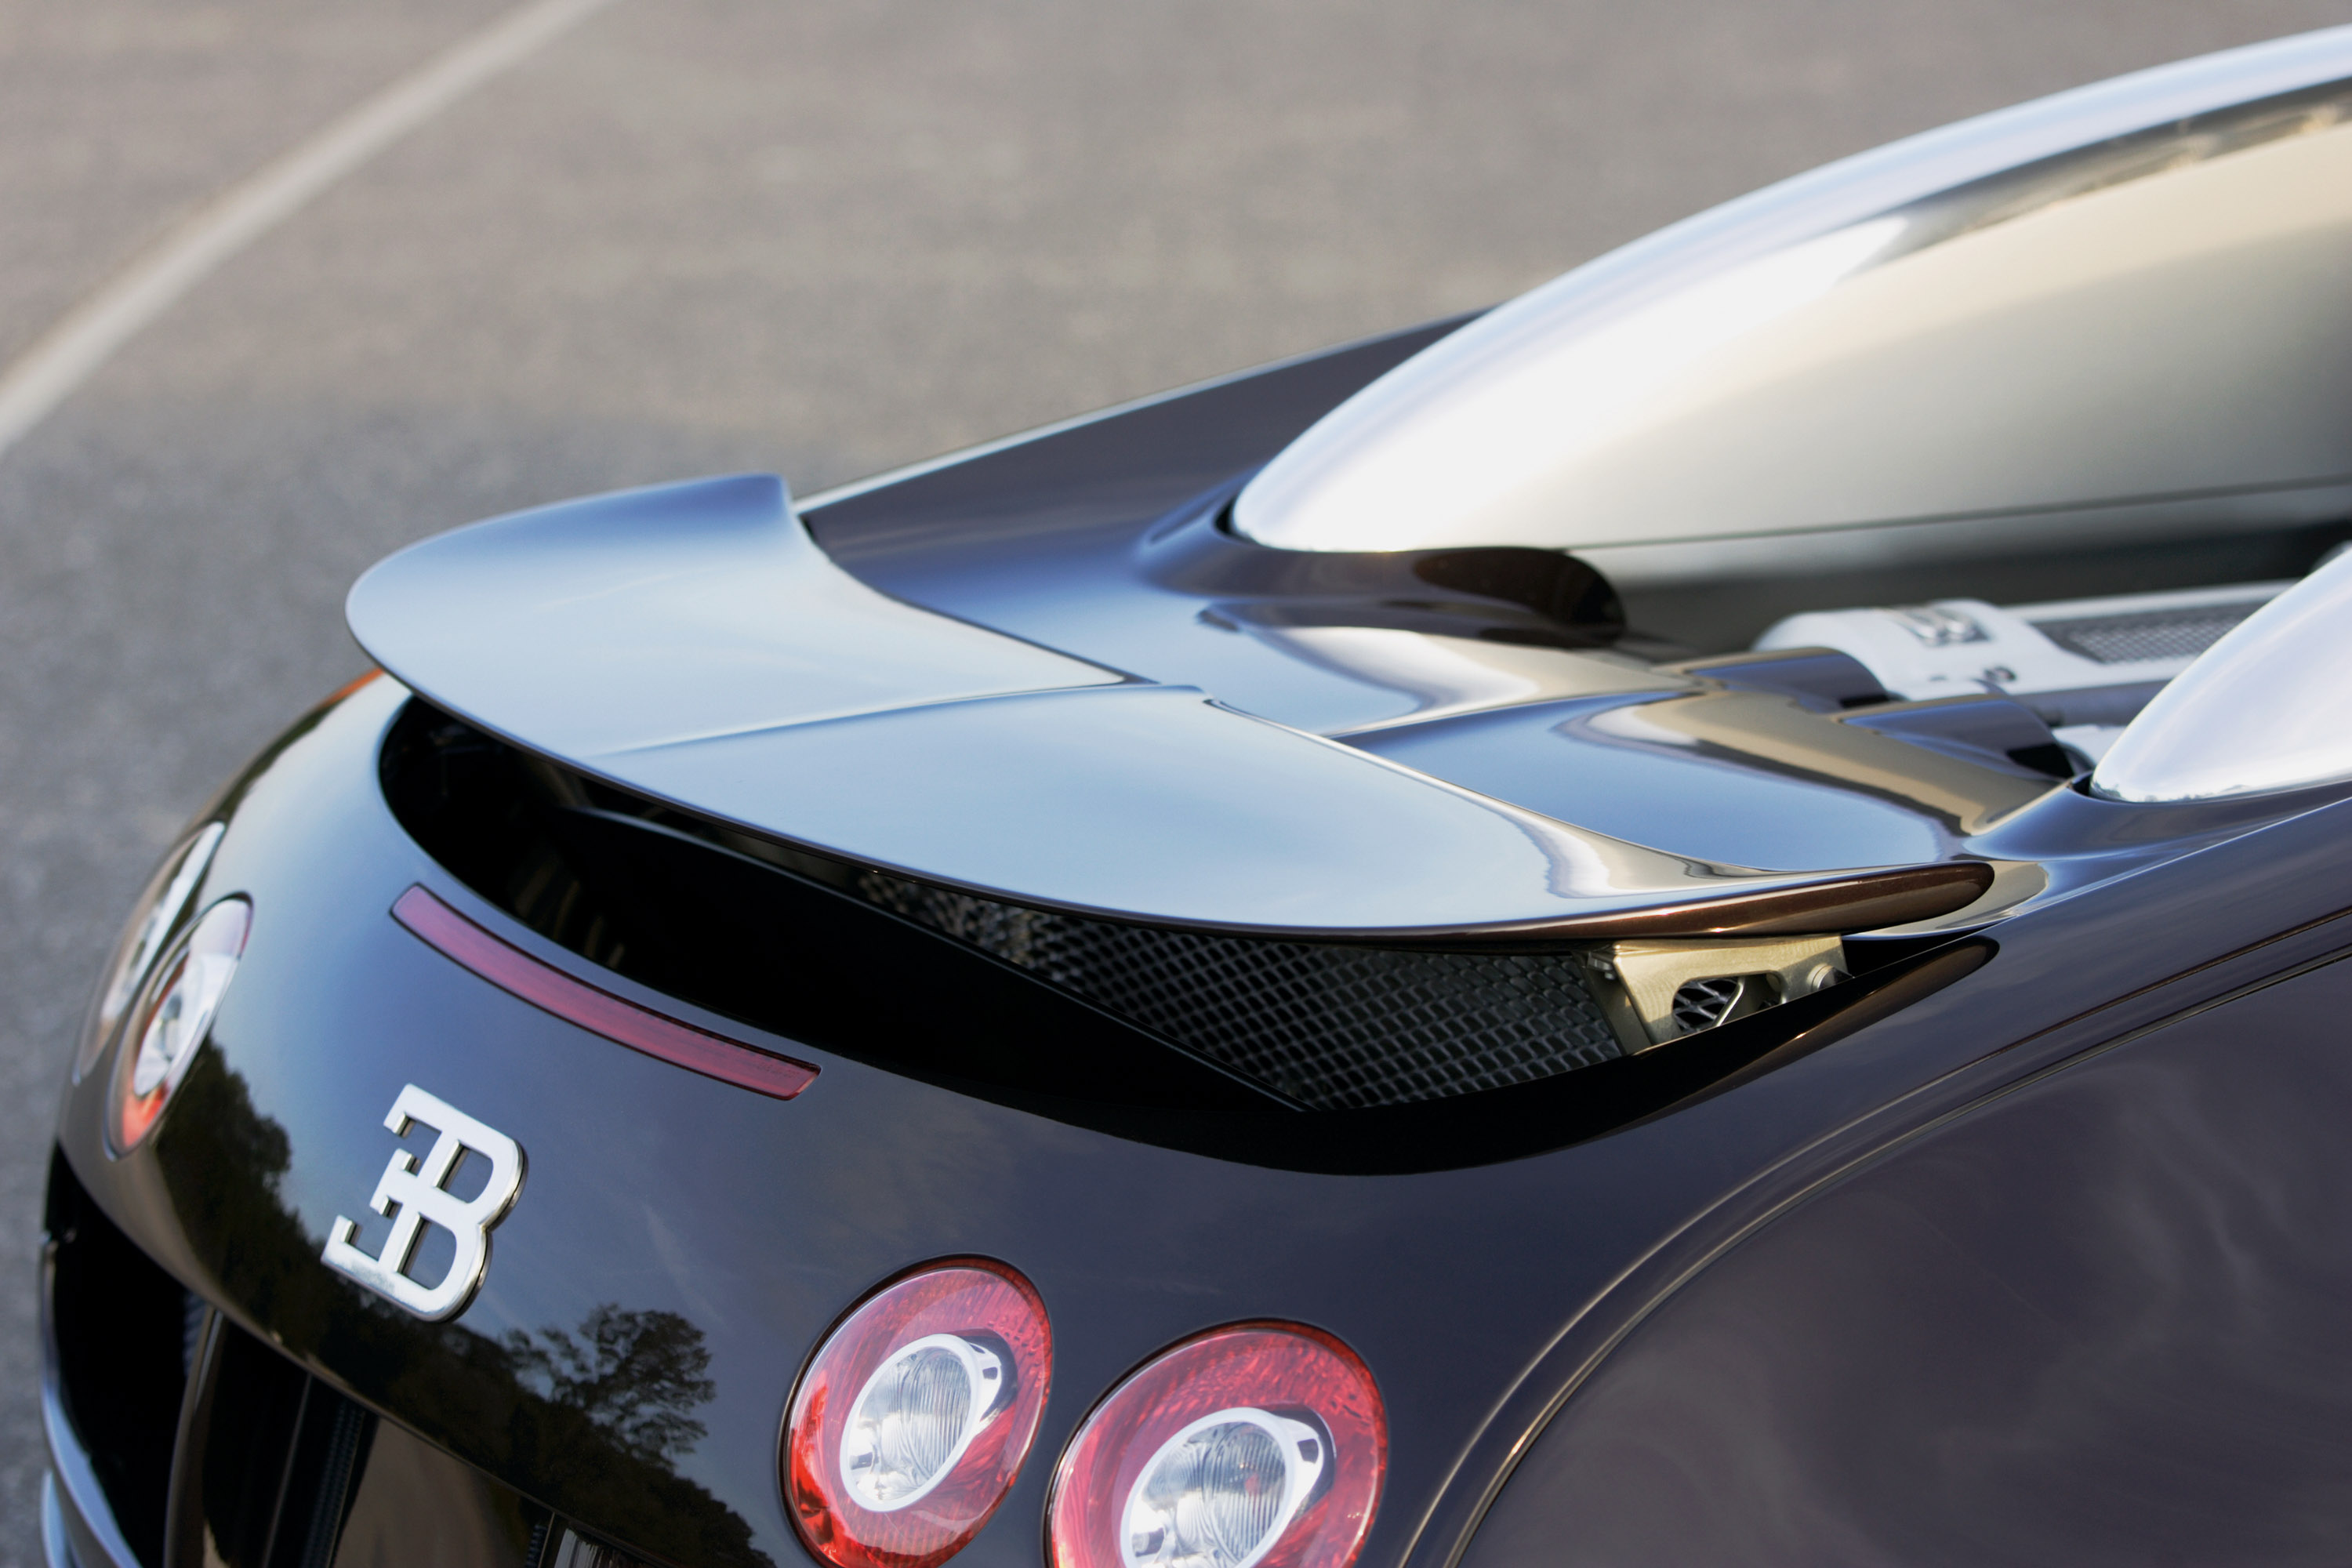 Bugatti Veyron on the track of the Targa Florio